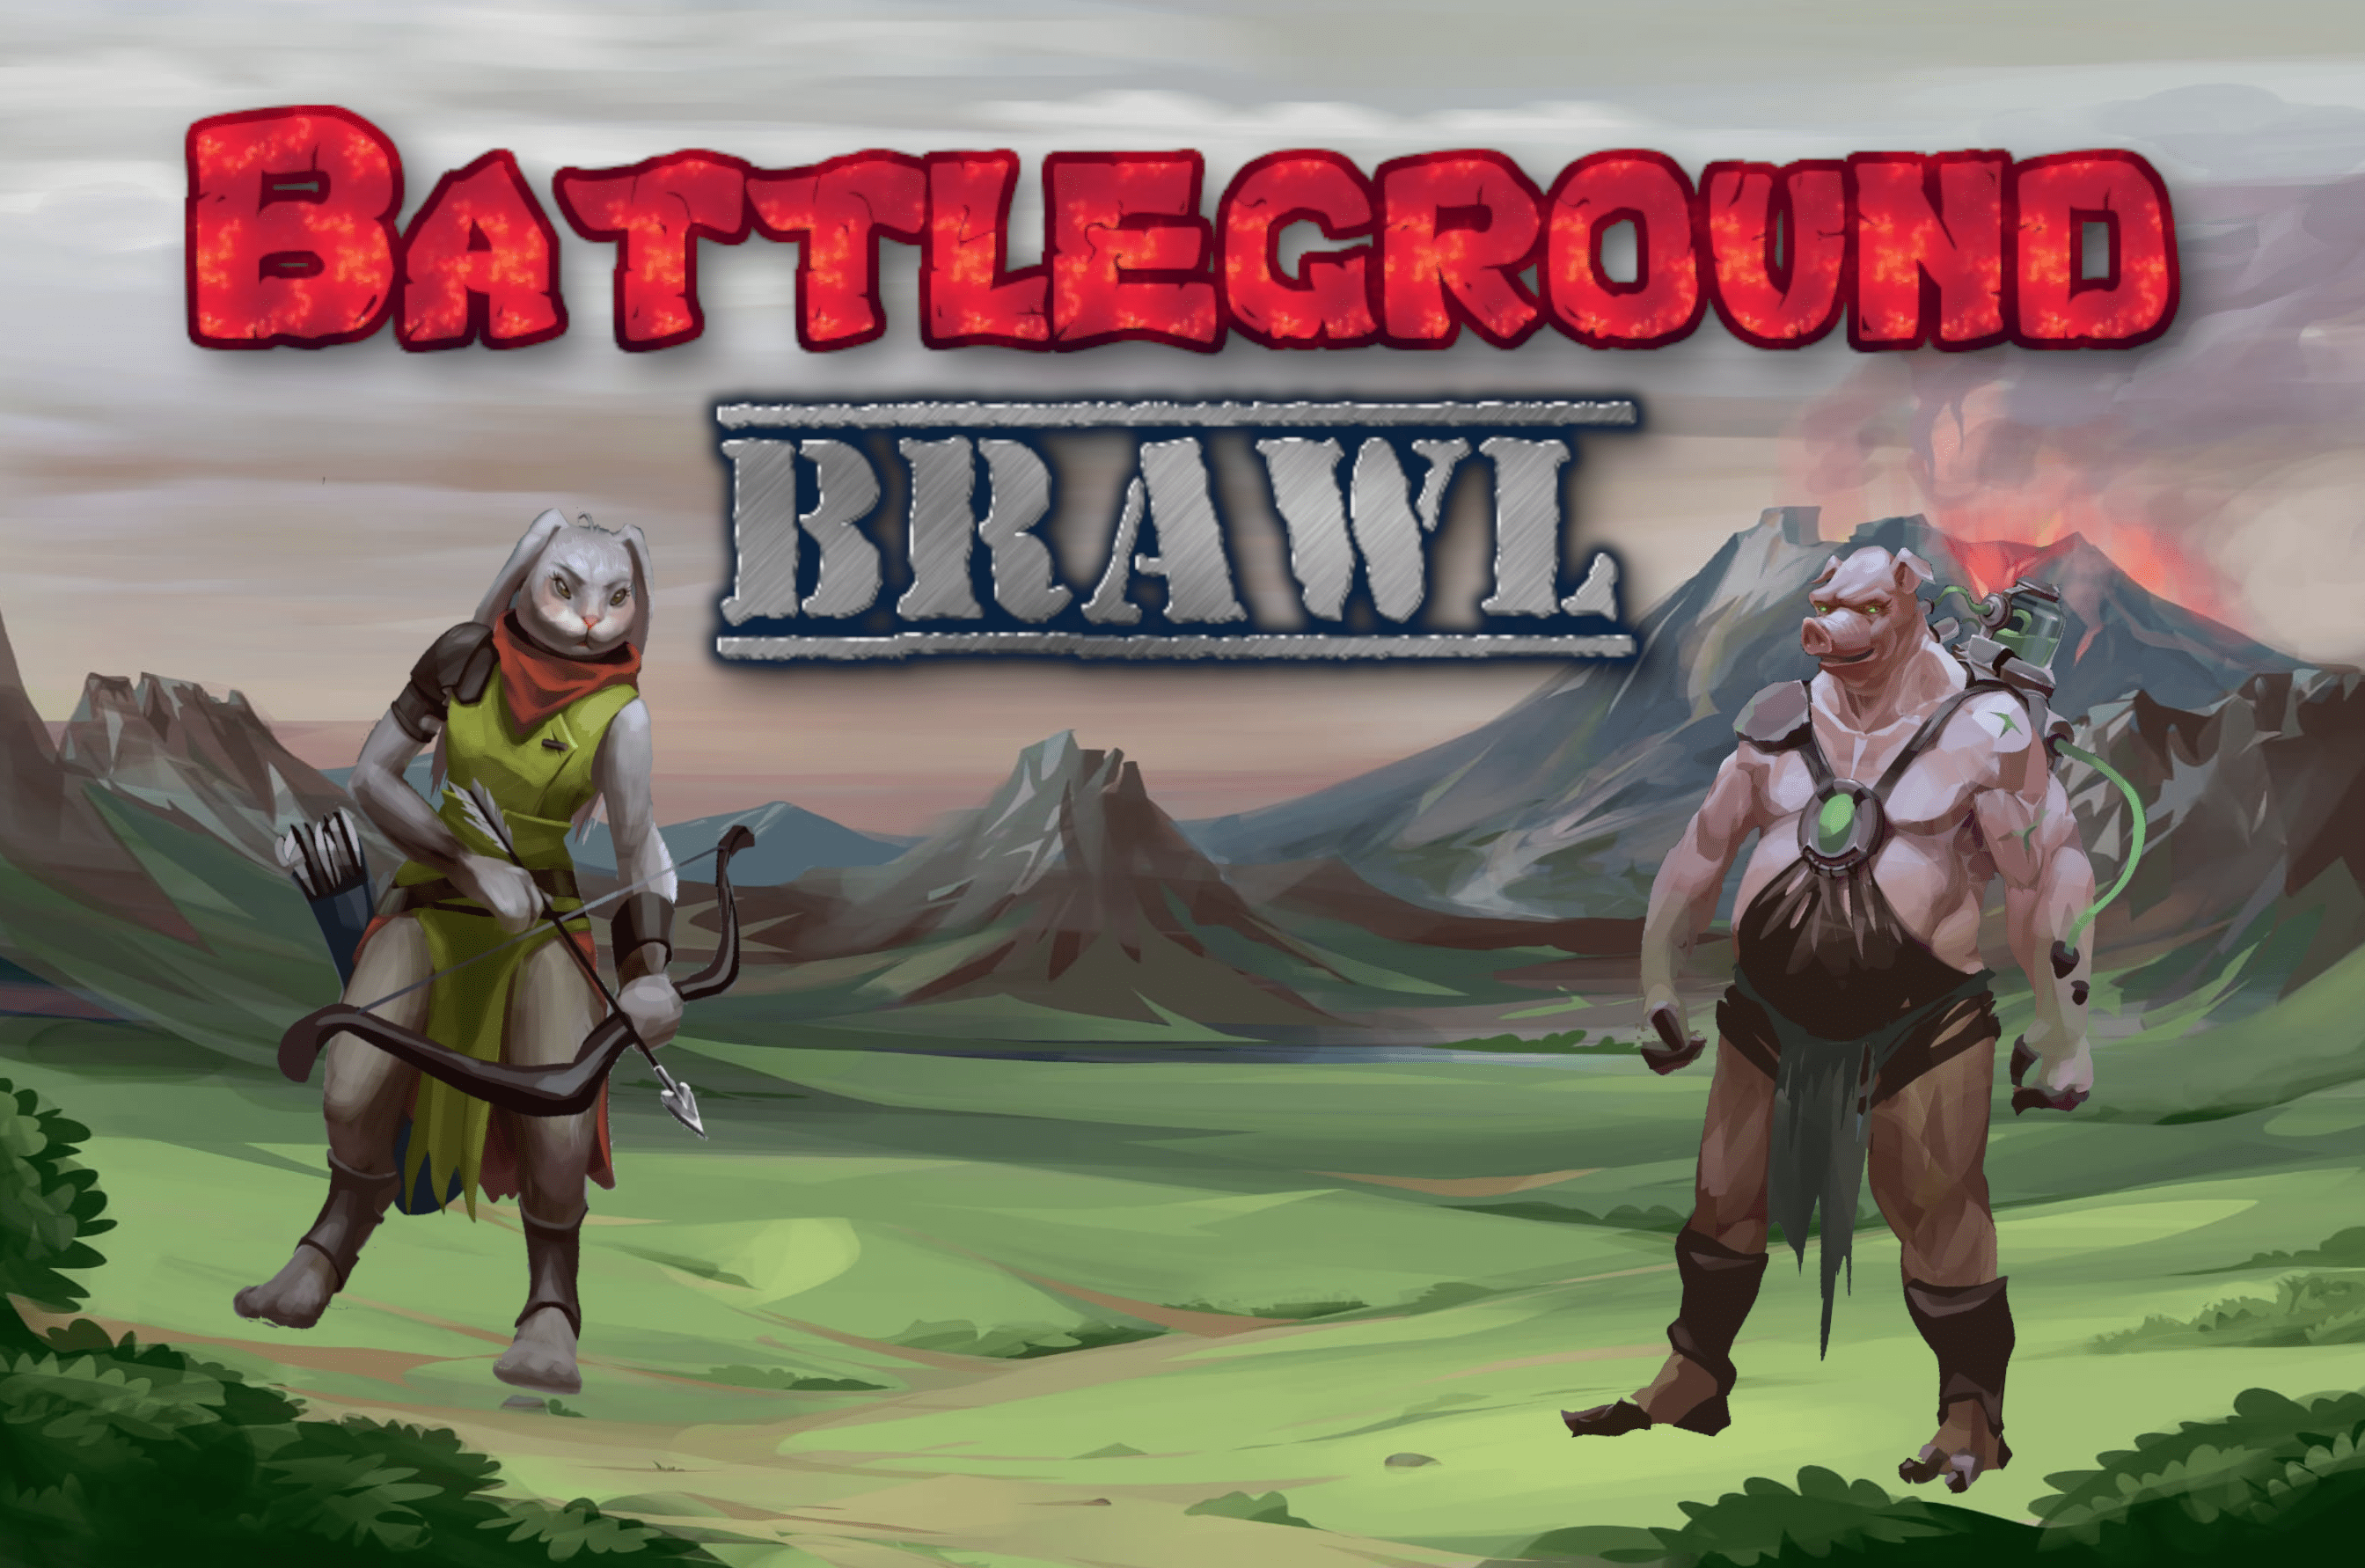 Battleground Brawl